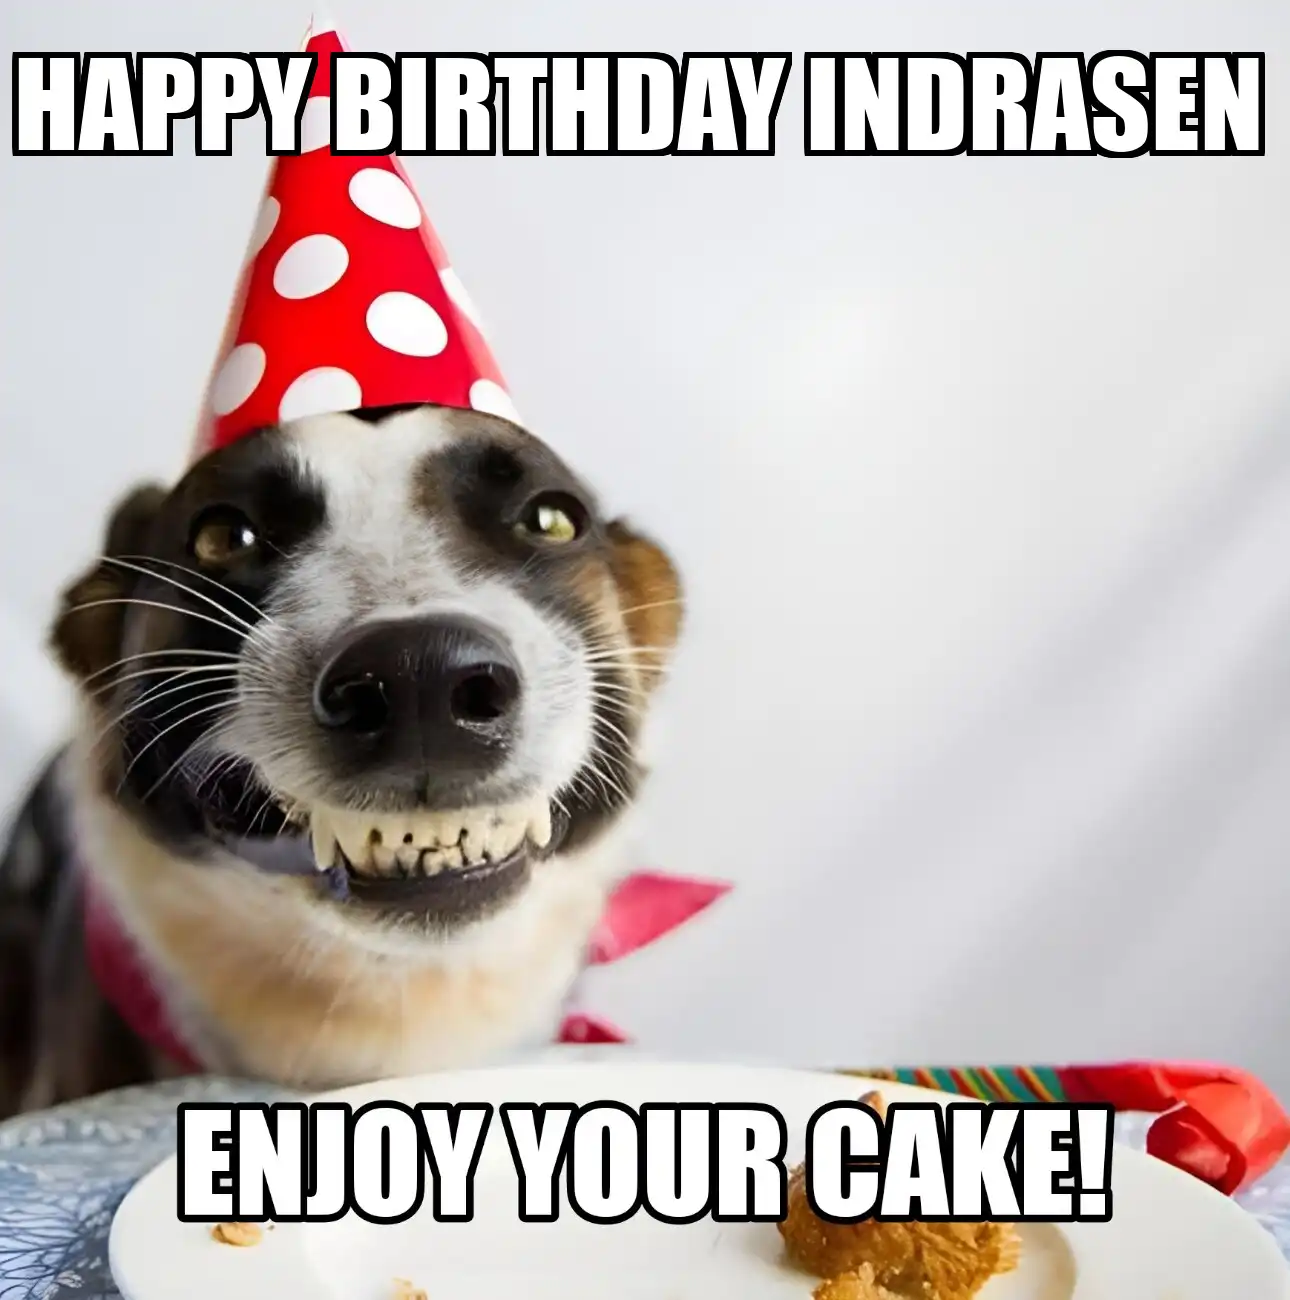 Happy Birthday Indrasen Enjoy Your Cake Dog Meme